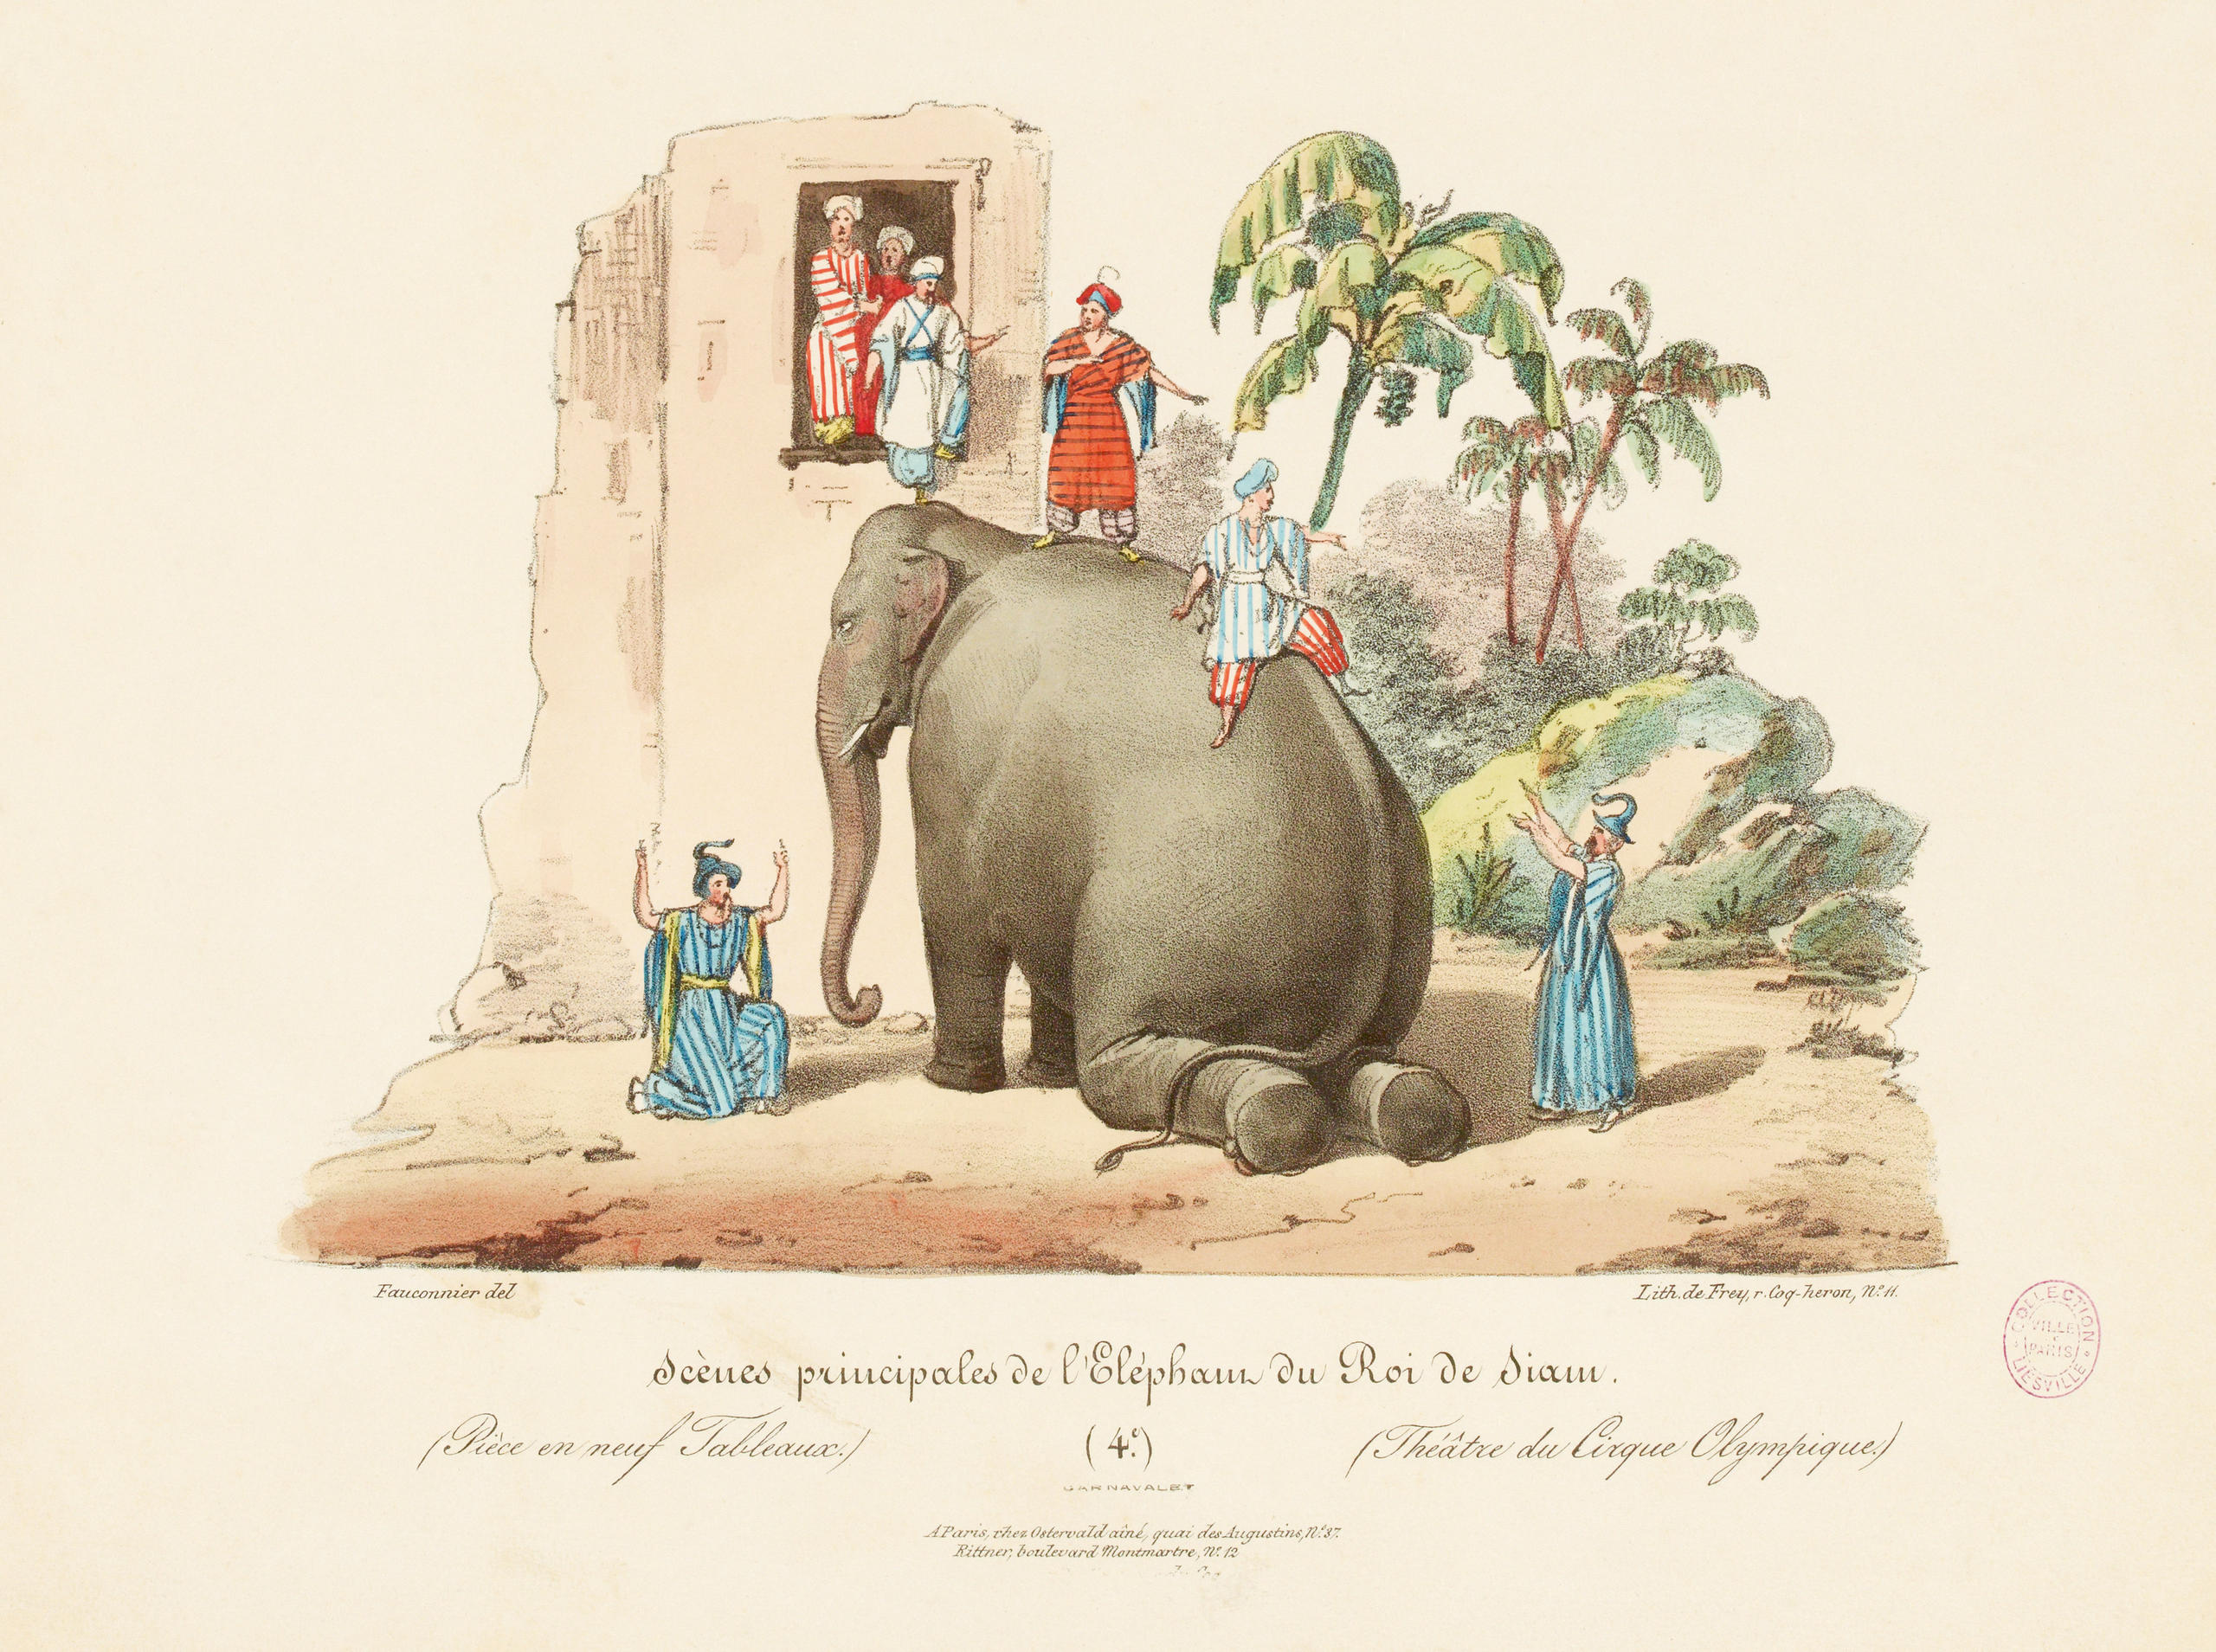 Dibujo que muestra a un elefante con varias personas en escena de teatro